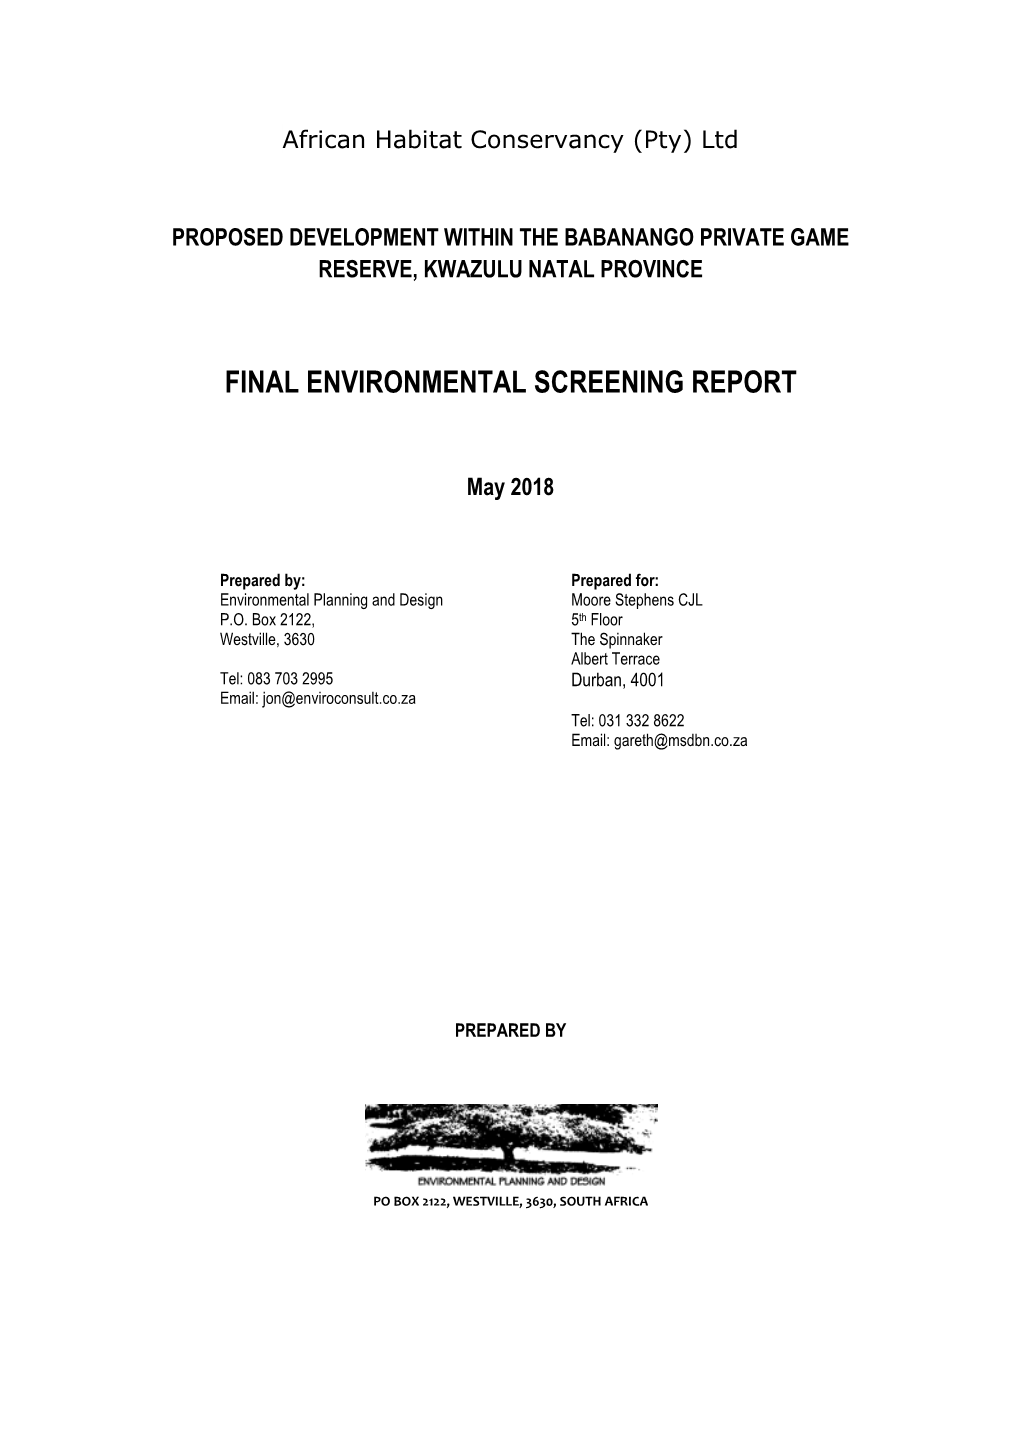 Final Environmental Screening Report